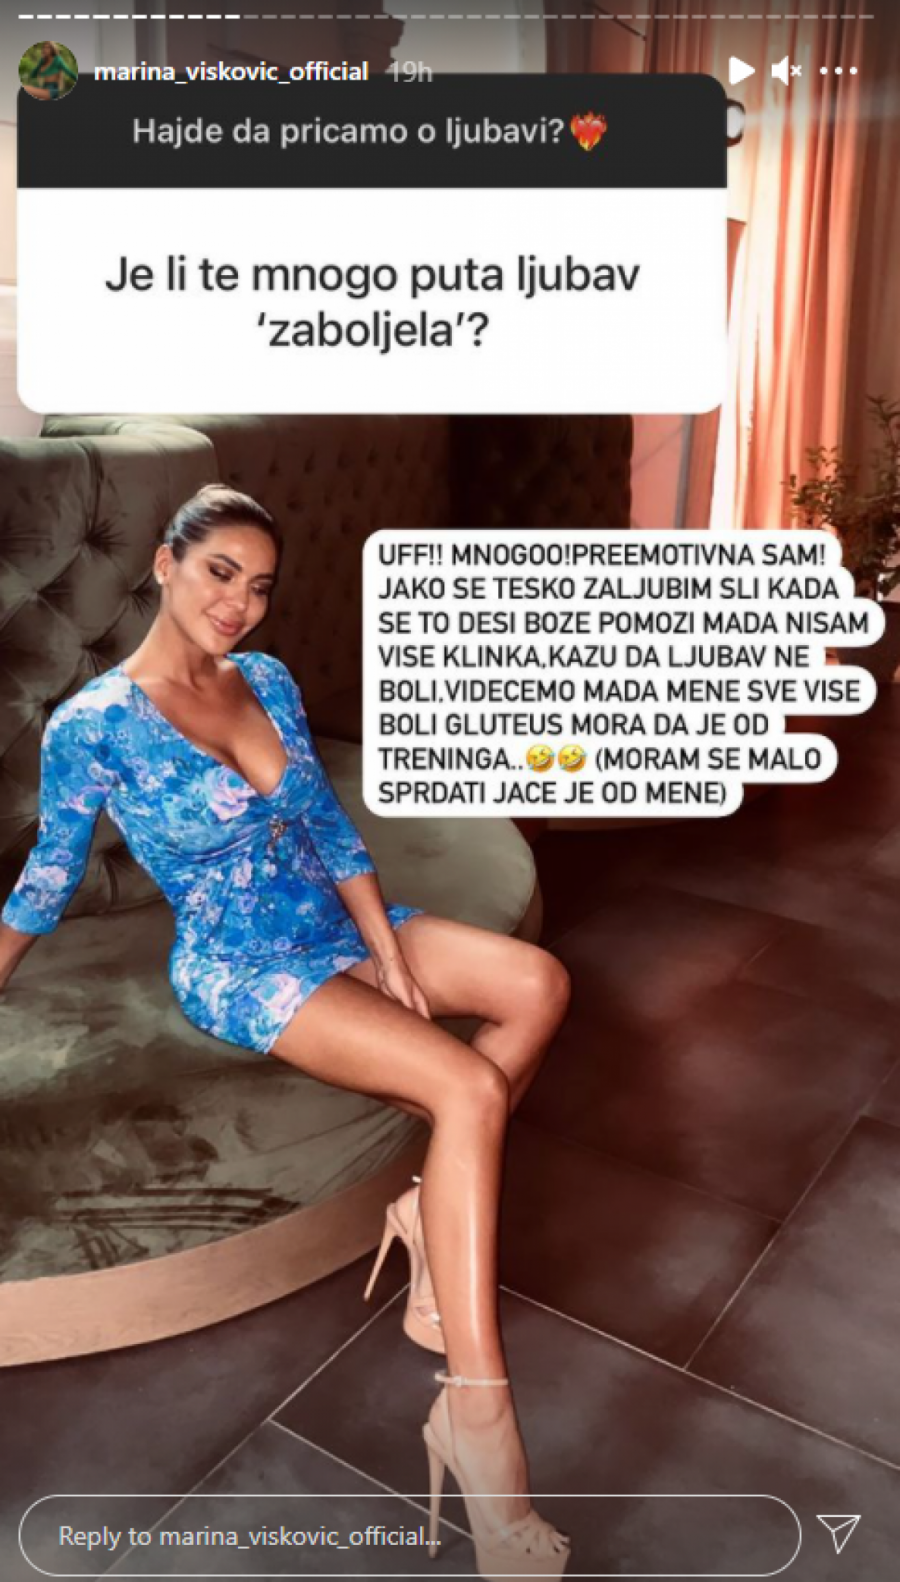 PREBOLITE PARTNERA REDOVNIM ALKOHOLISANJEM Marina Visković na Instagramu delila ljubavne savete, pitanja se samo ređaju